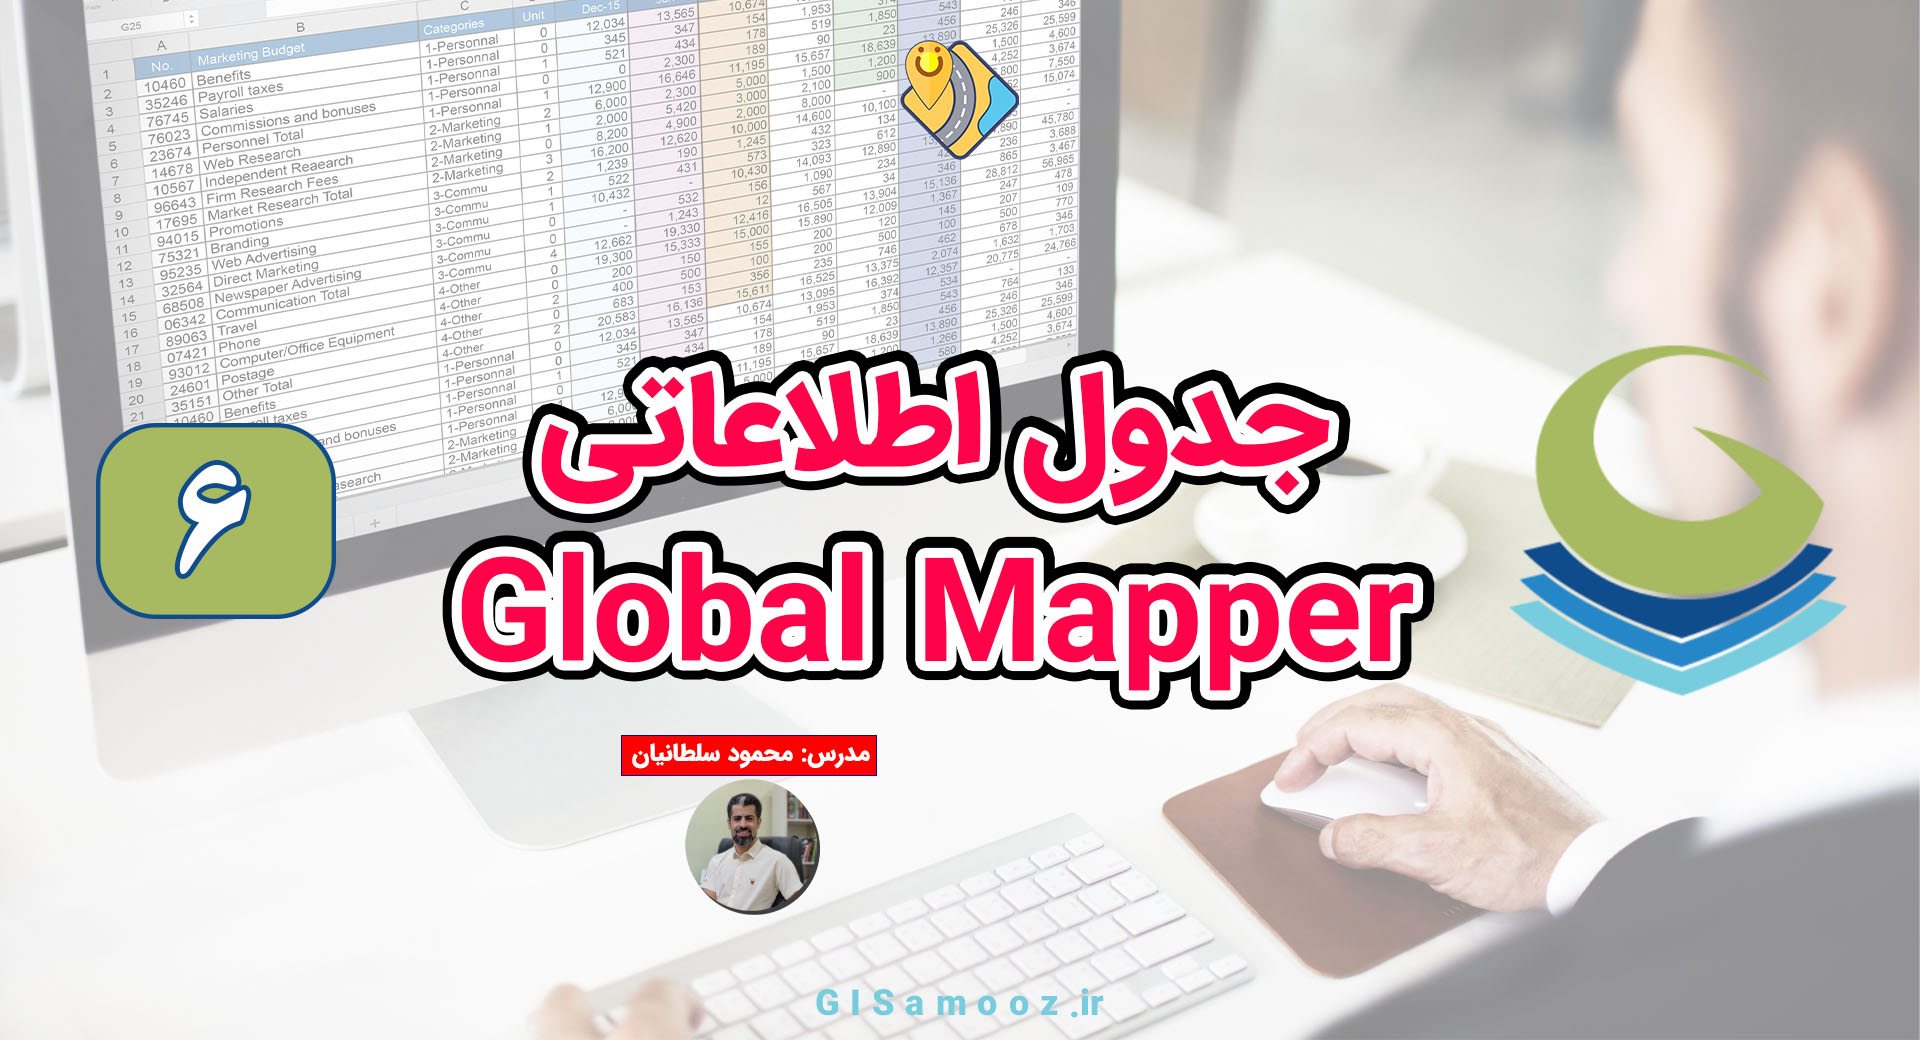 کار با جدول اطلاعاتی در گلوبال مپر Global Mapper